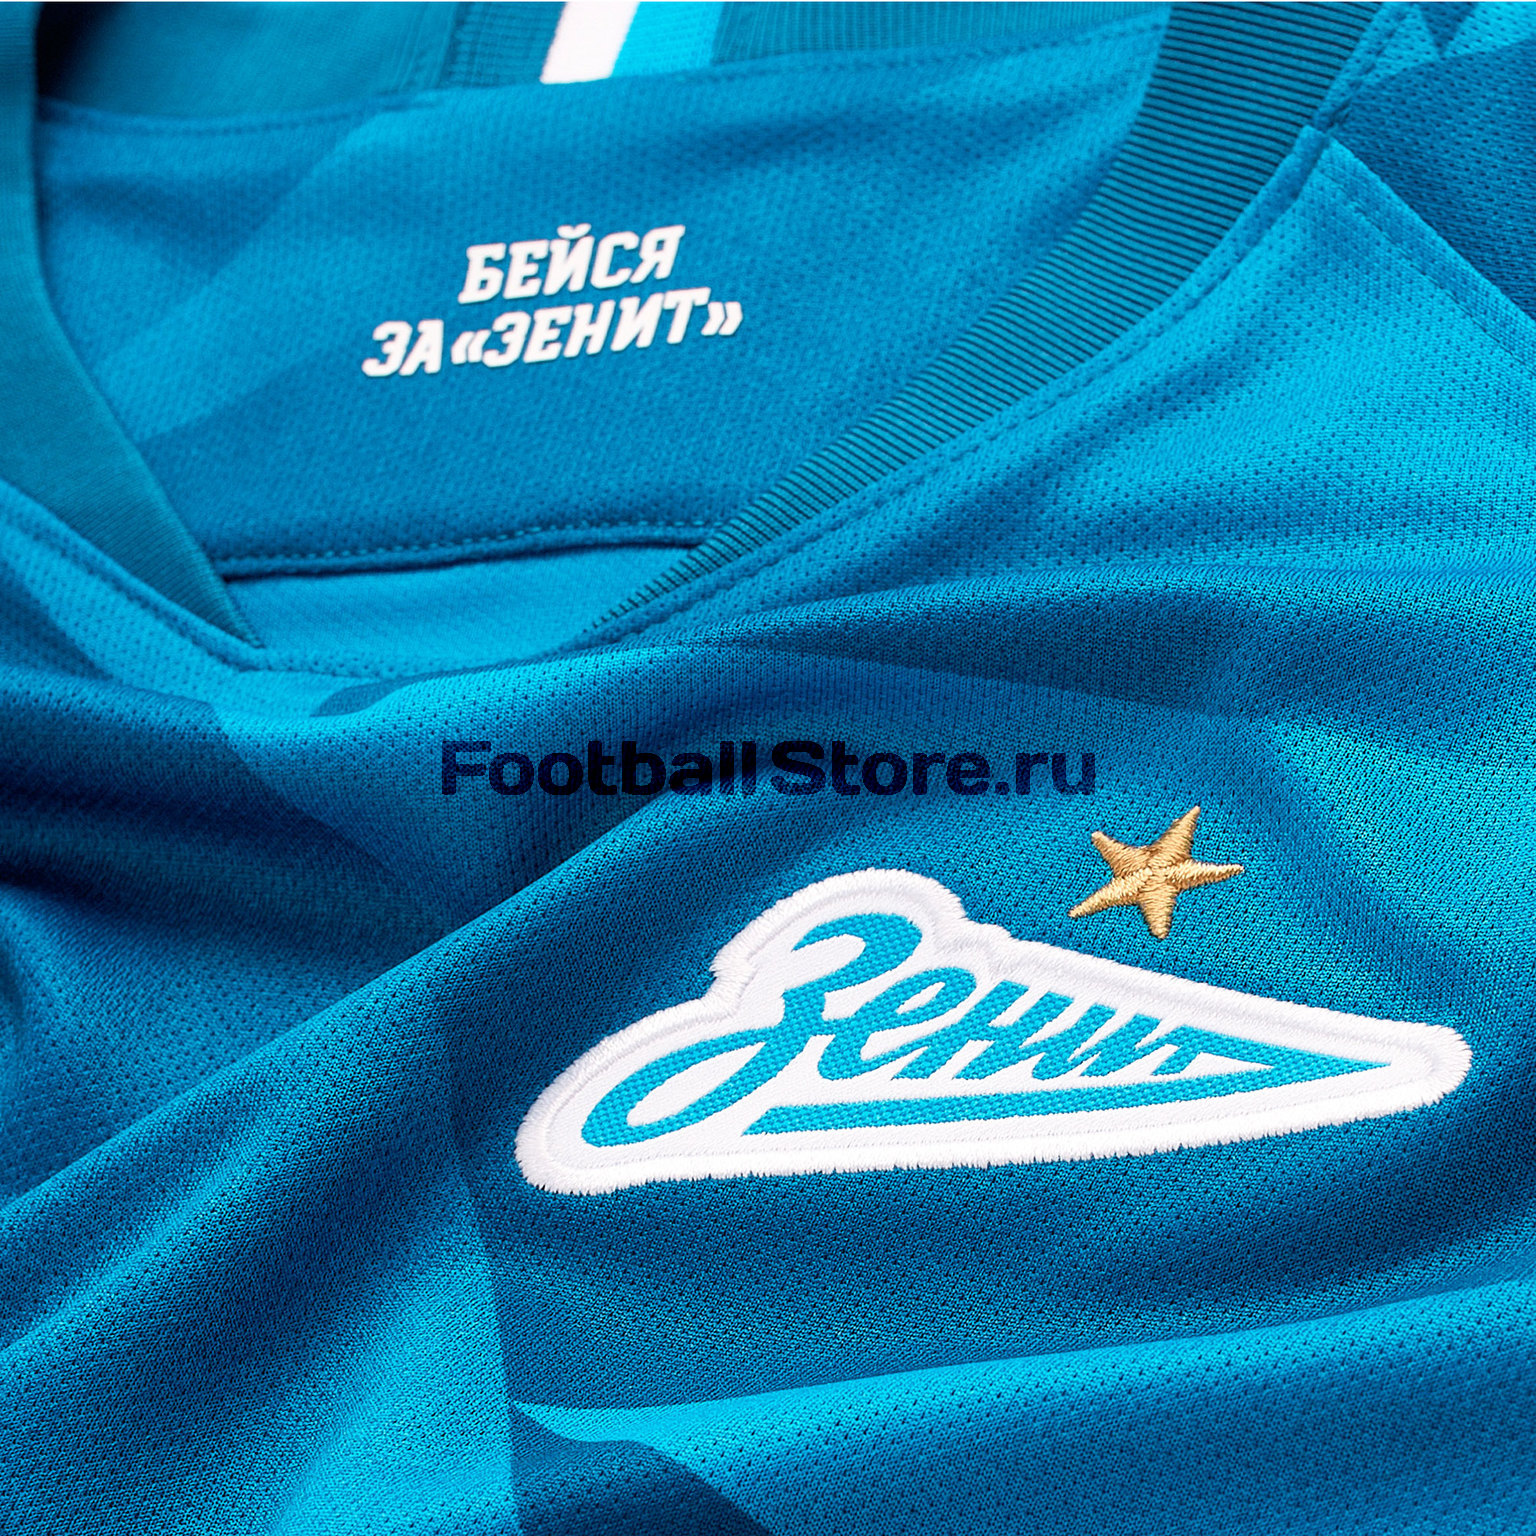 Футболка домашняя подростковая Nike Zenit сезон 2019/20